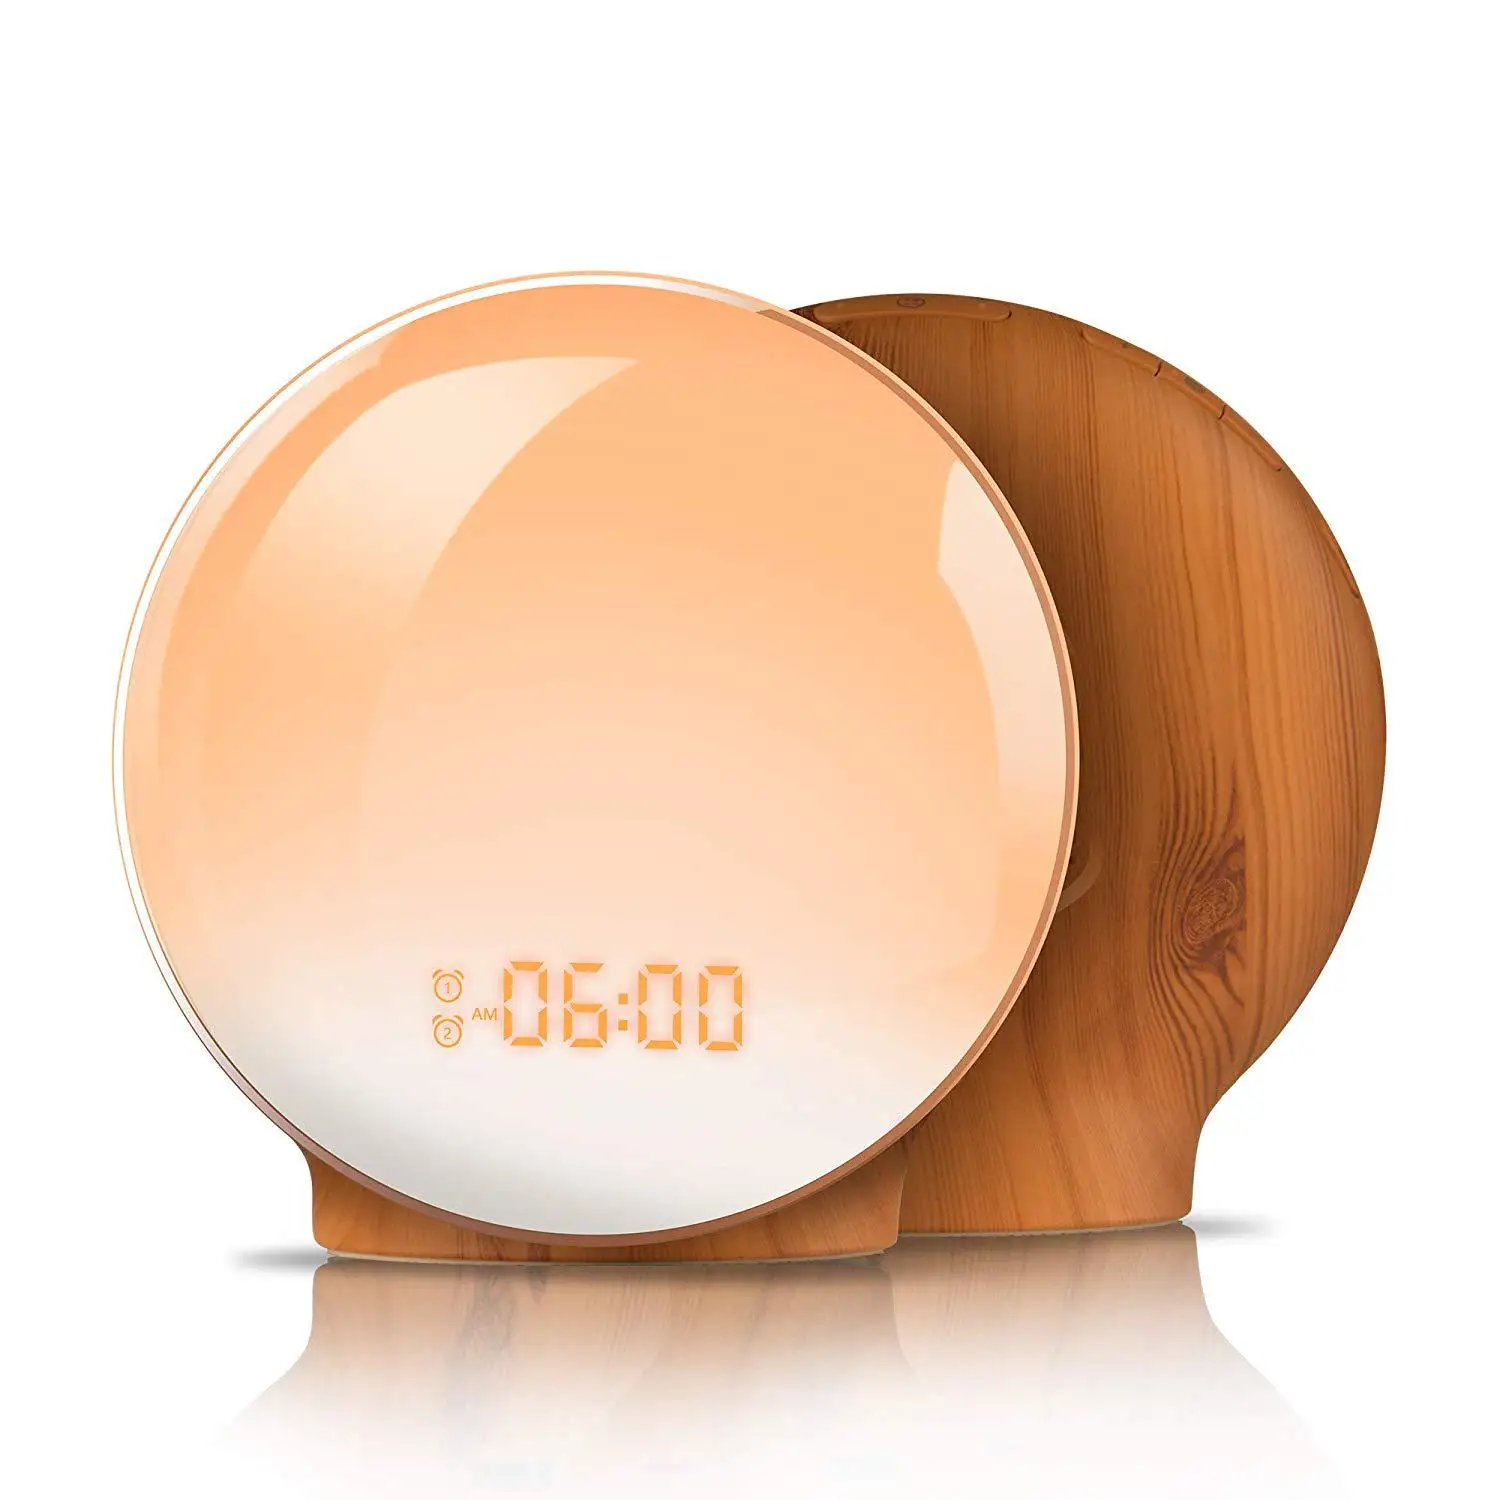 

2021 Hot Sale Digital Clock Led Kids Wake-Up Light Smart Sleep Wake-Up Light Sunrise Alarm Clock, Wood grain color